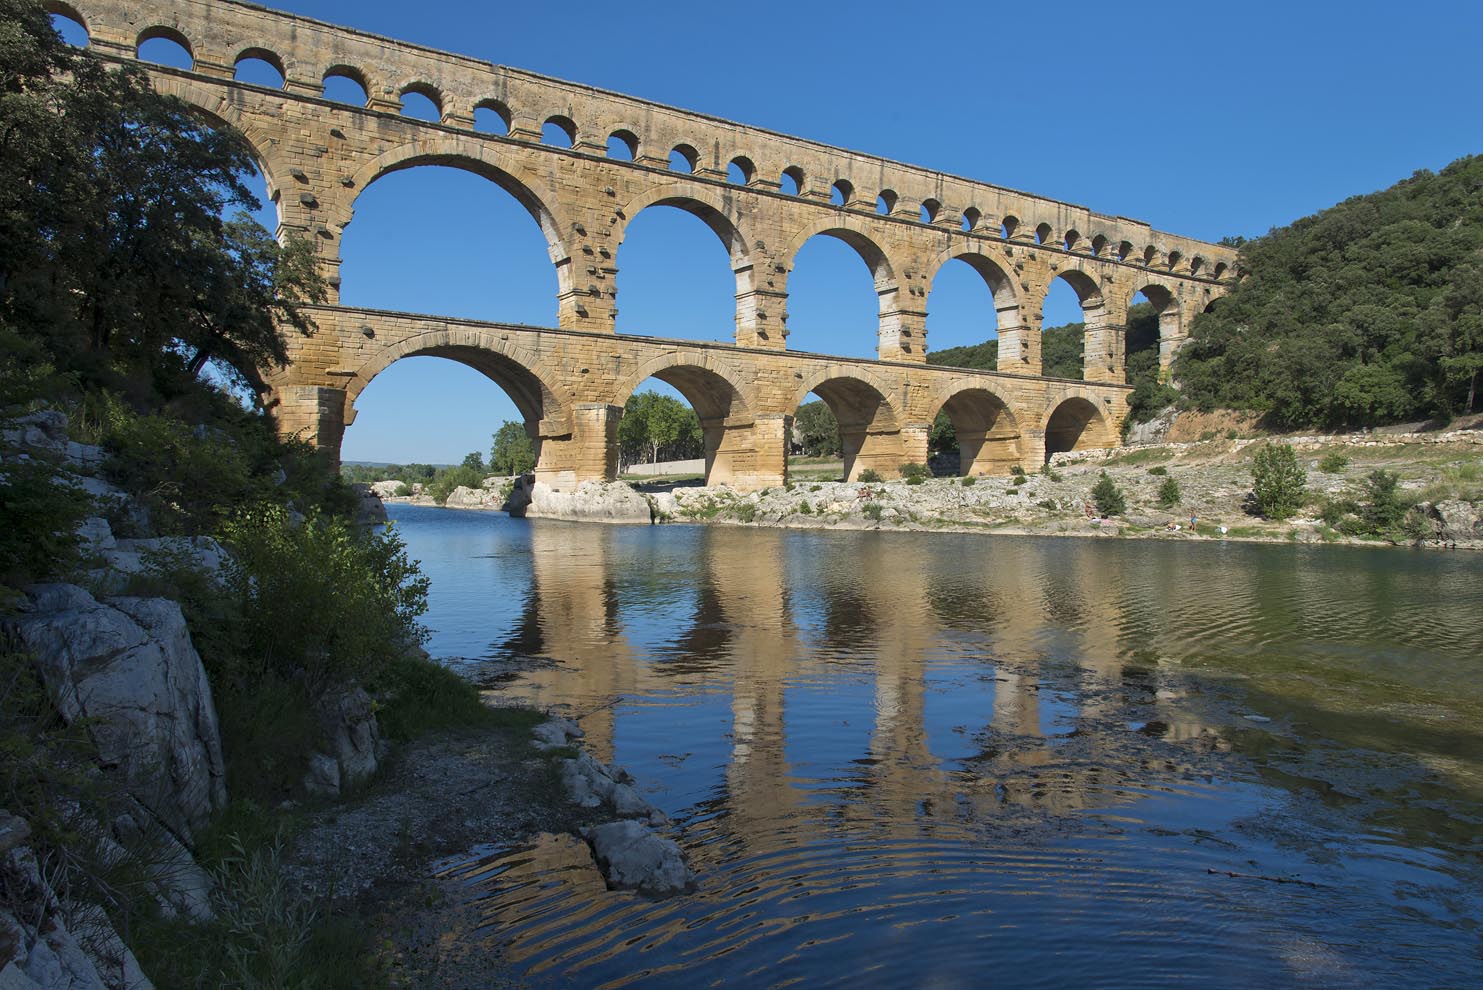 Roman aqueduct of Pont du Gard built in 1st century